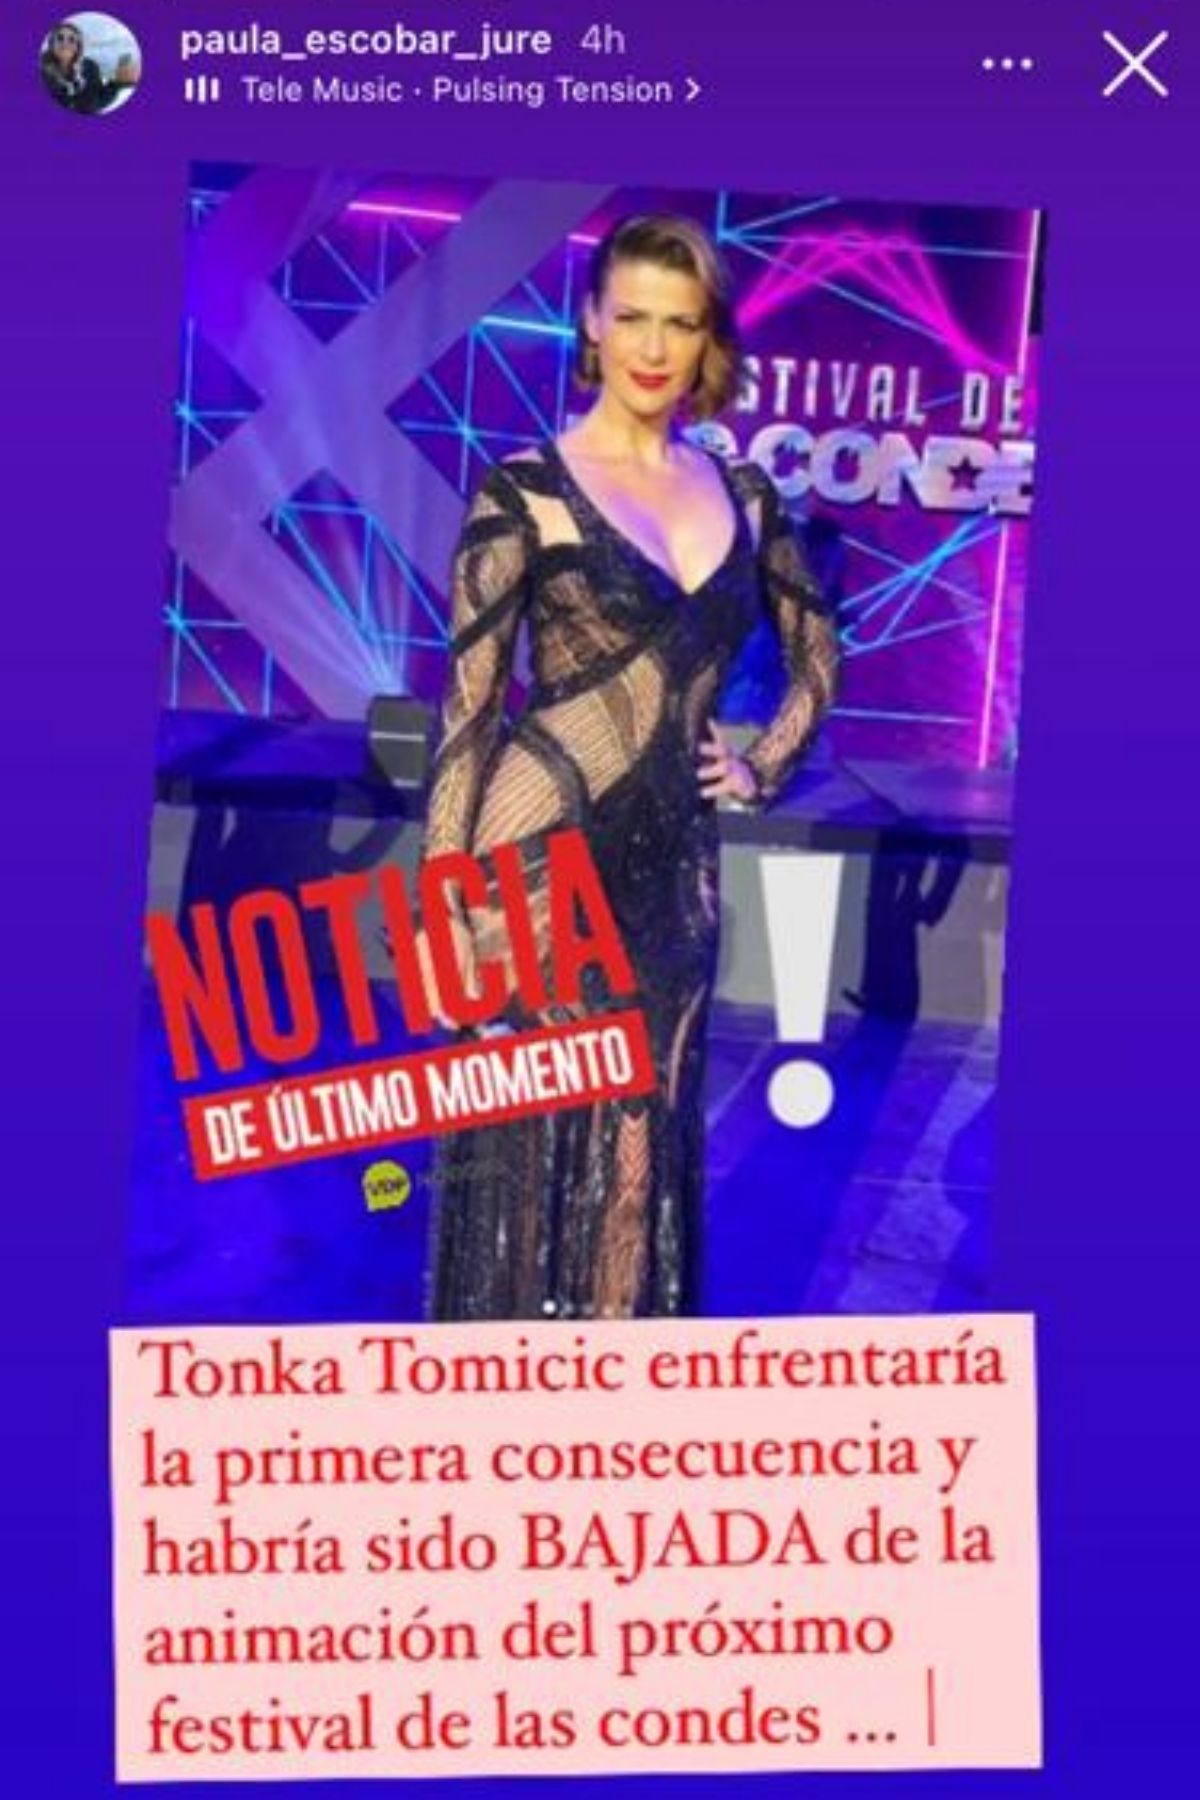 Tonka Tomicic Festival De Las Condes